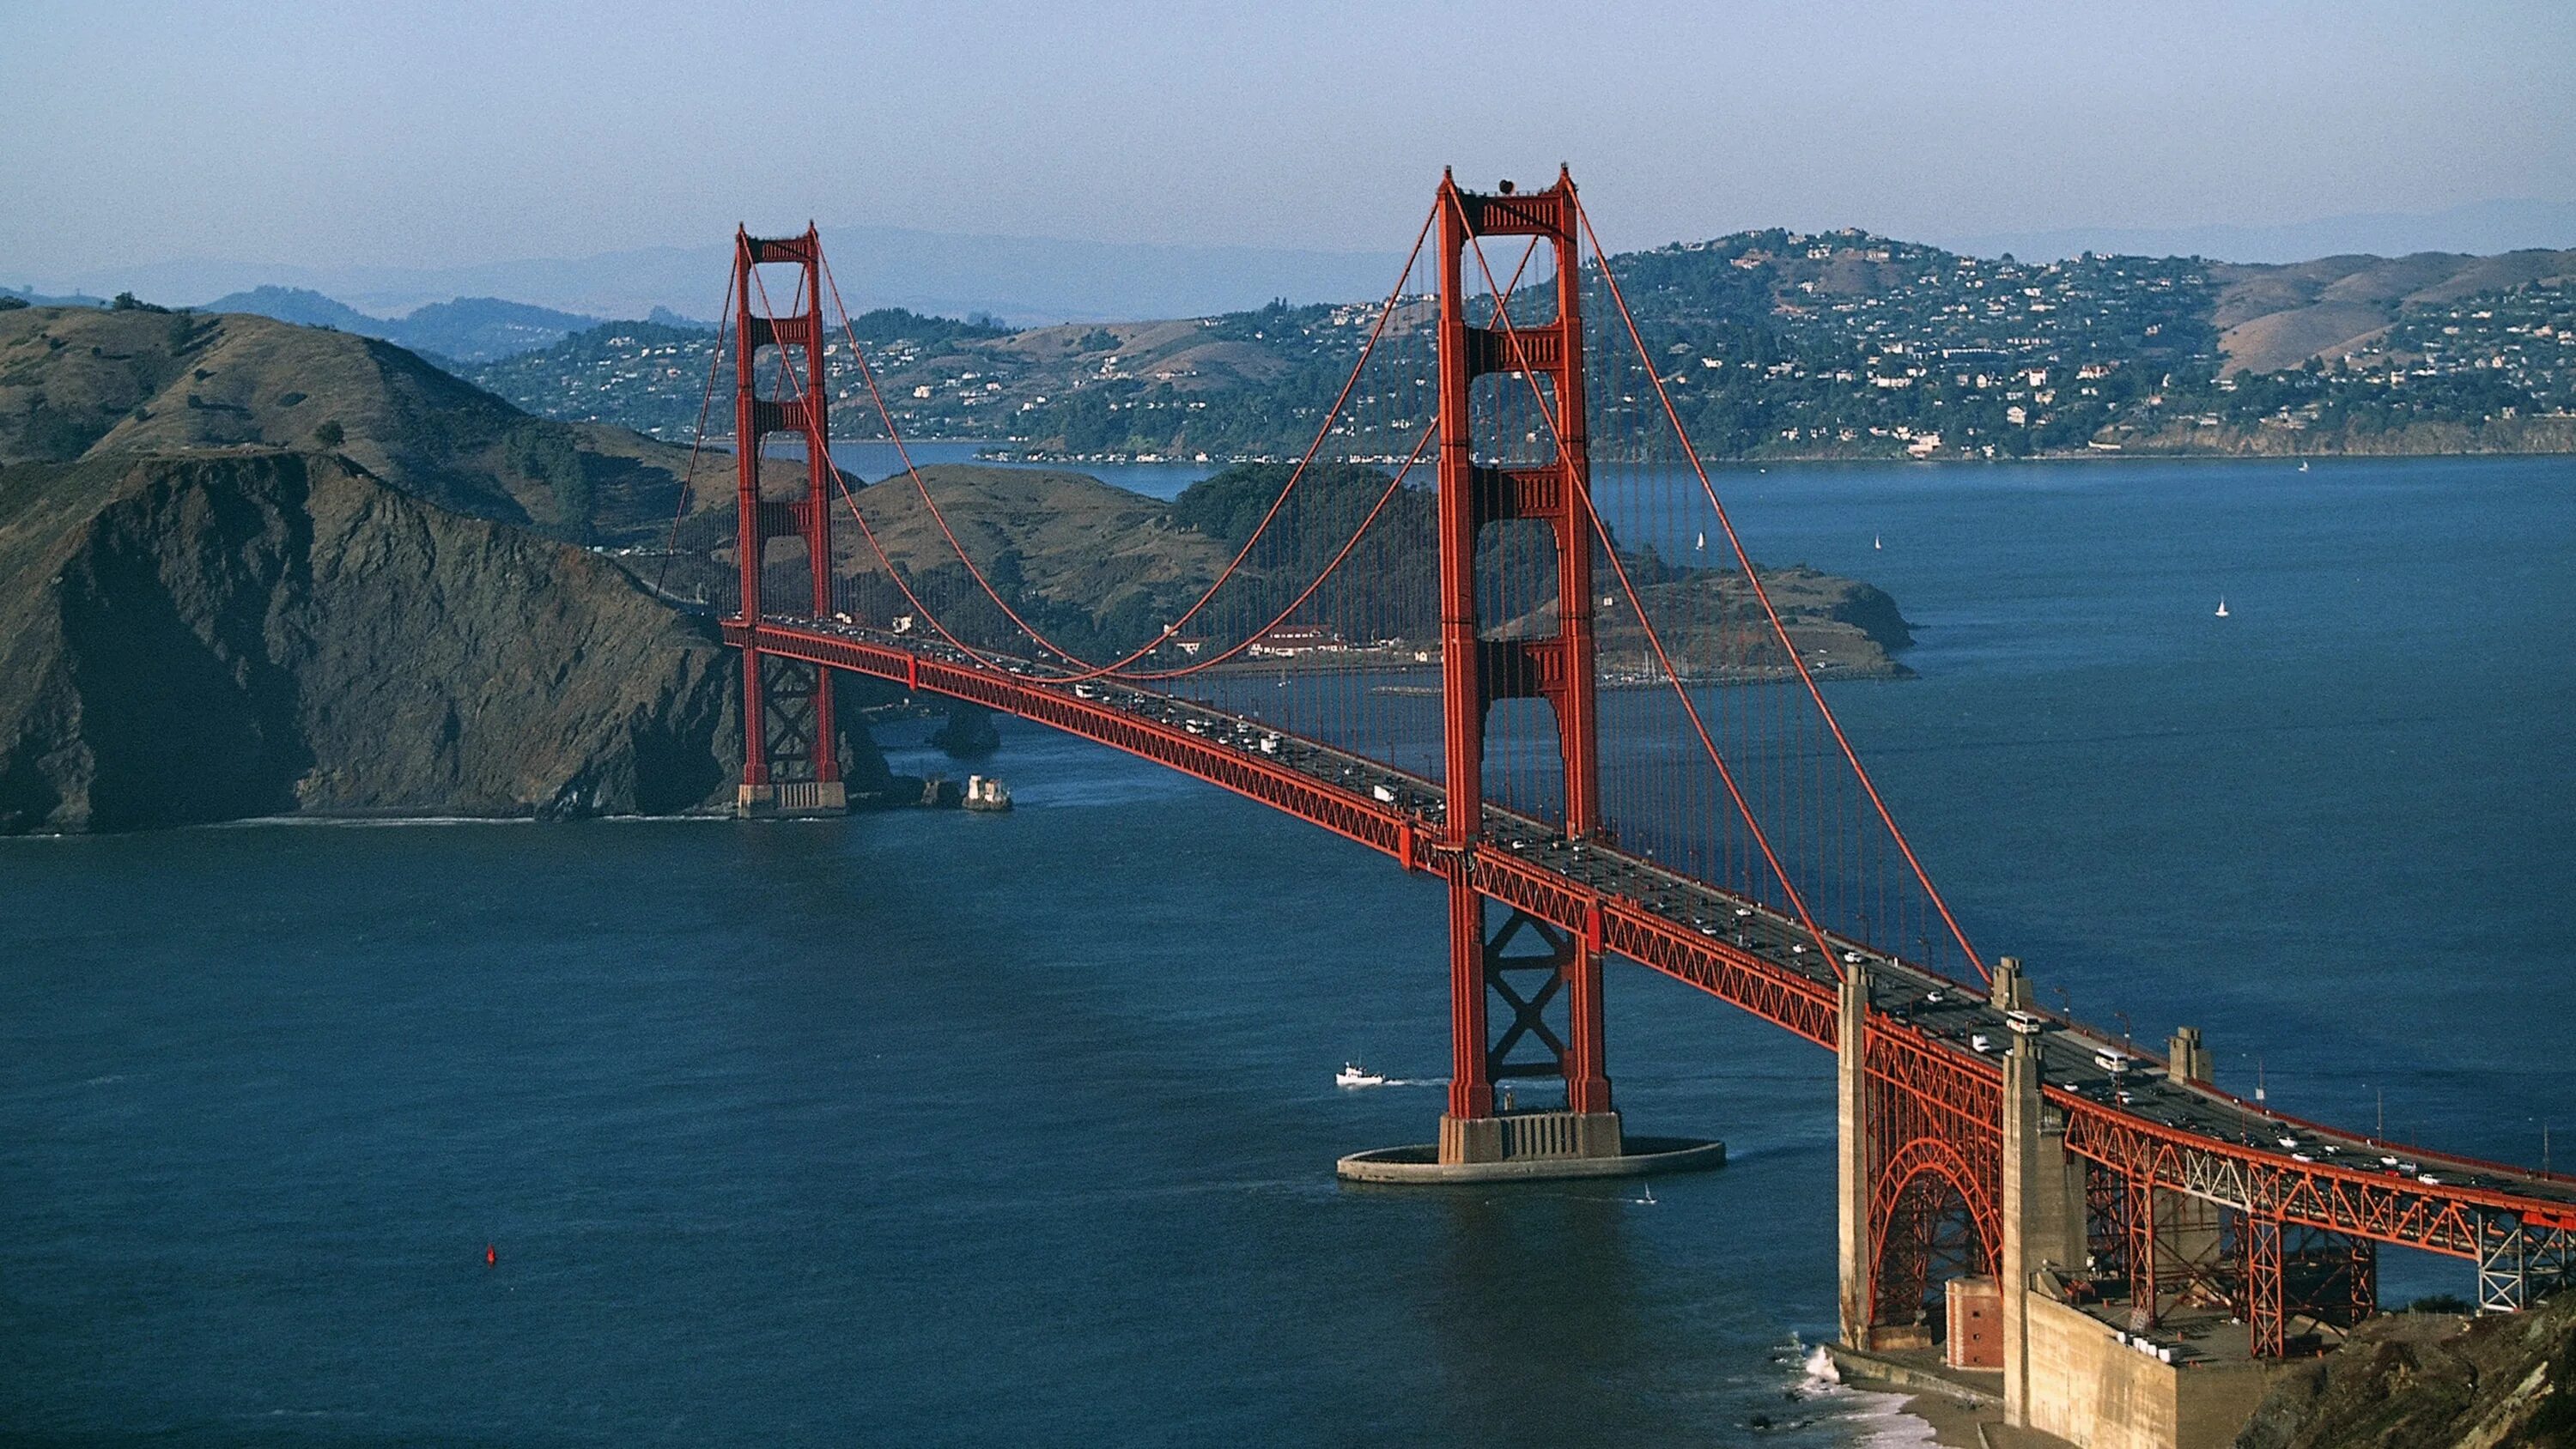 Сан франциско сколько. Мост золотые ворота в Сан-Франциско. Вантовый мост Сан Франциско. Голден гейт бридж Сан Франциско. Мост «золотые ворота», Сан-Франциско, Калифорния, США.